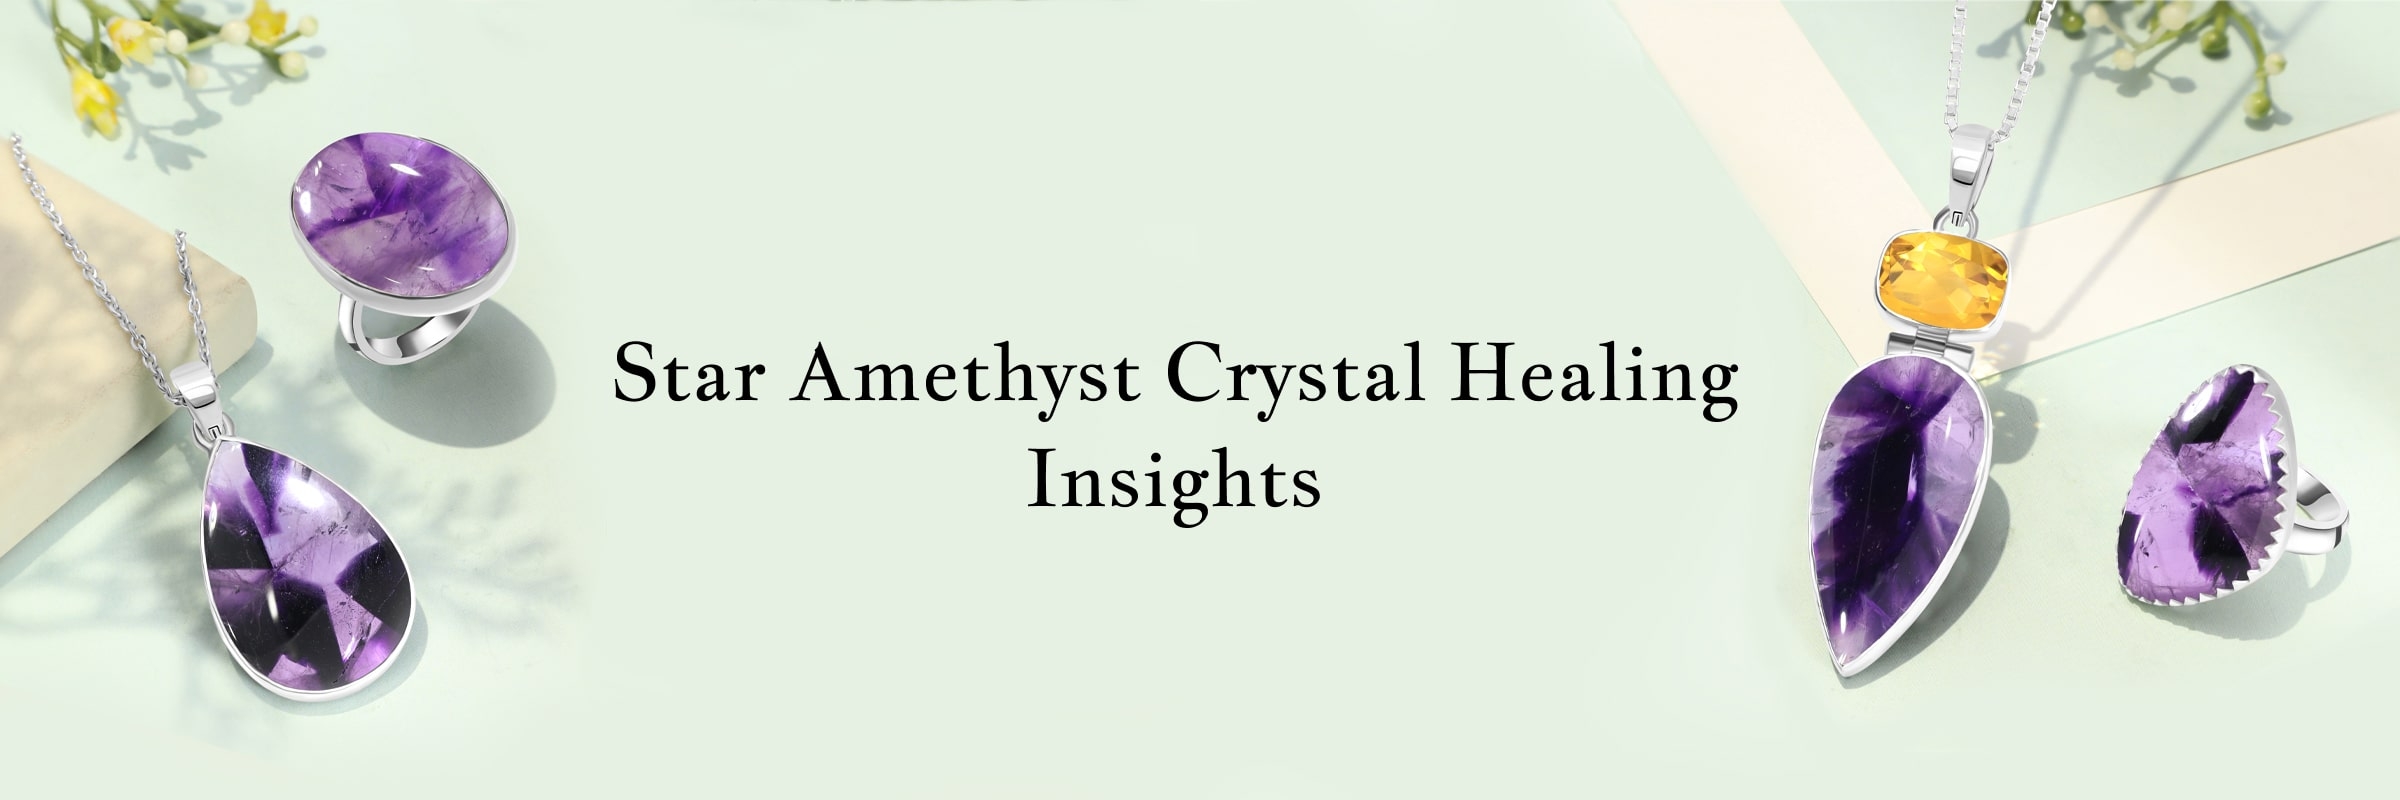 Healing Properties of Star Amethyst Crystal